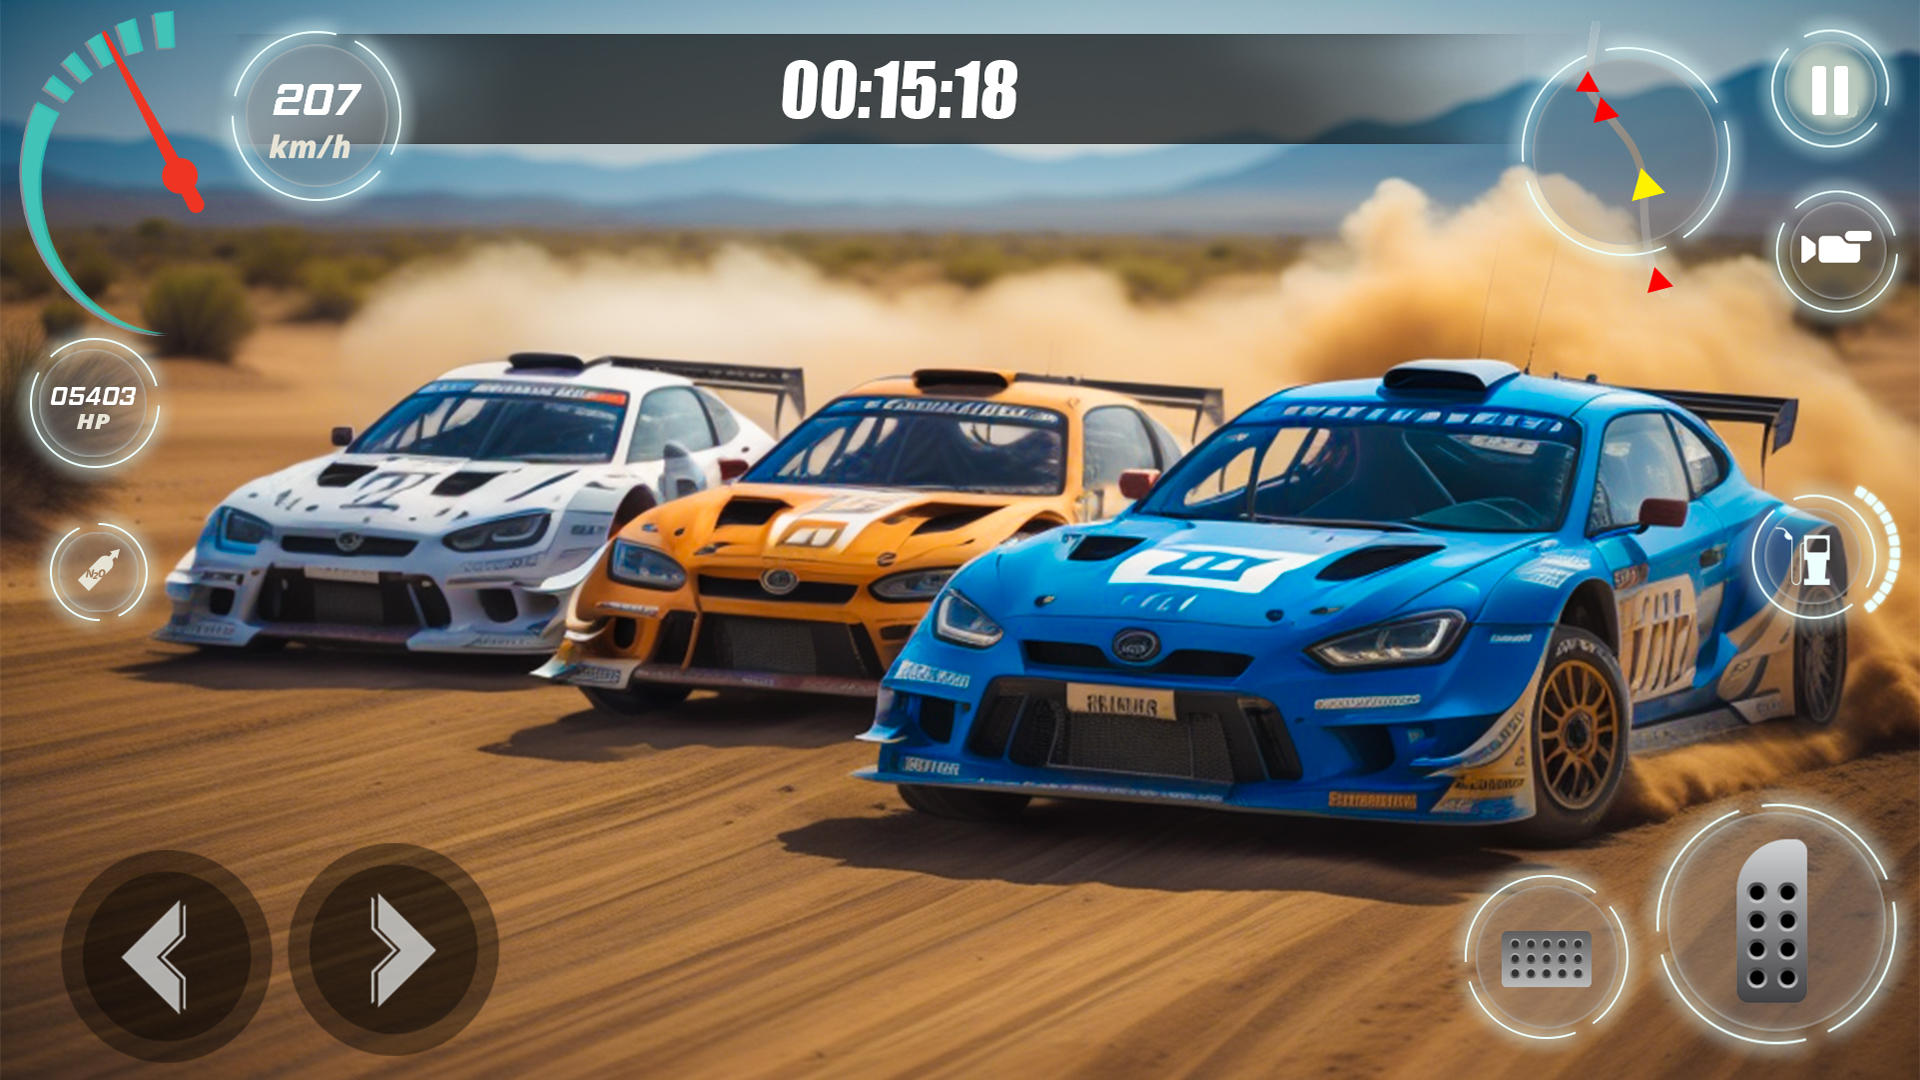 Screenshot 1 of เกมแข่งรถแรลลี่ออฟไลน์ 1.4